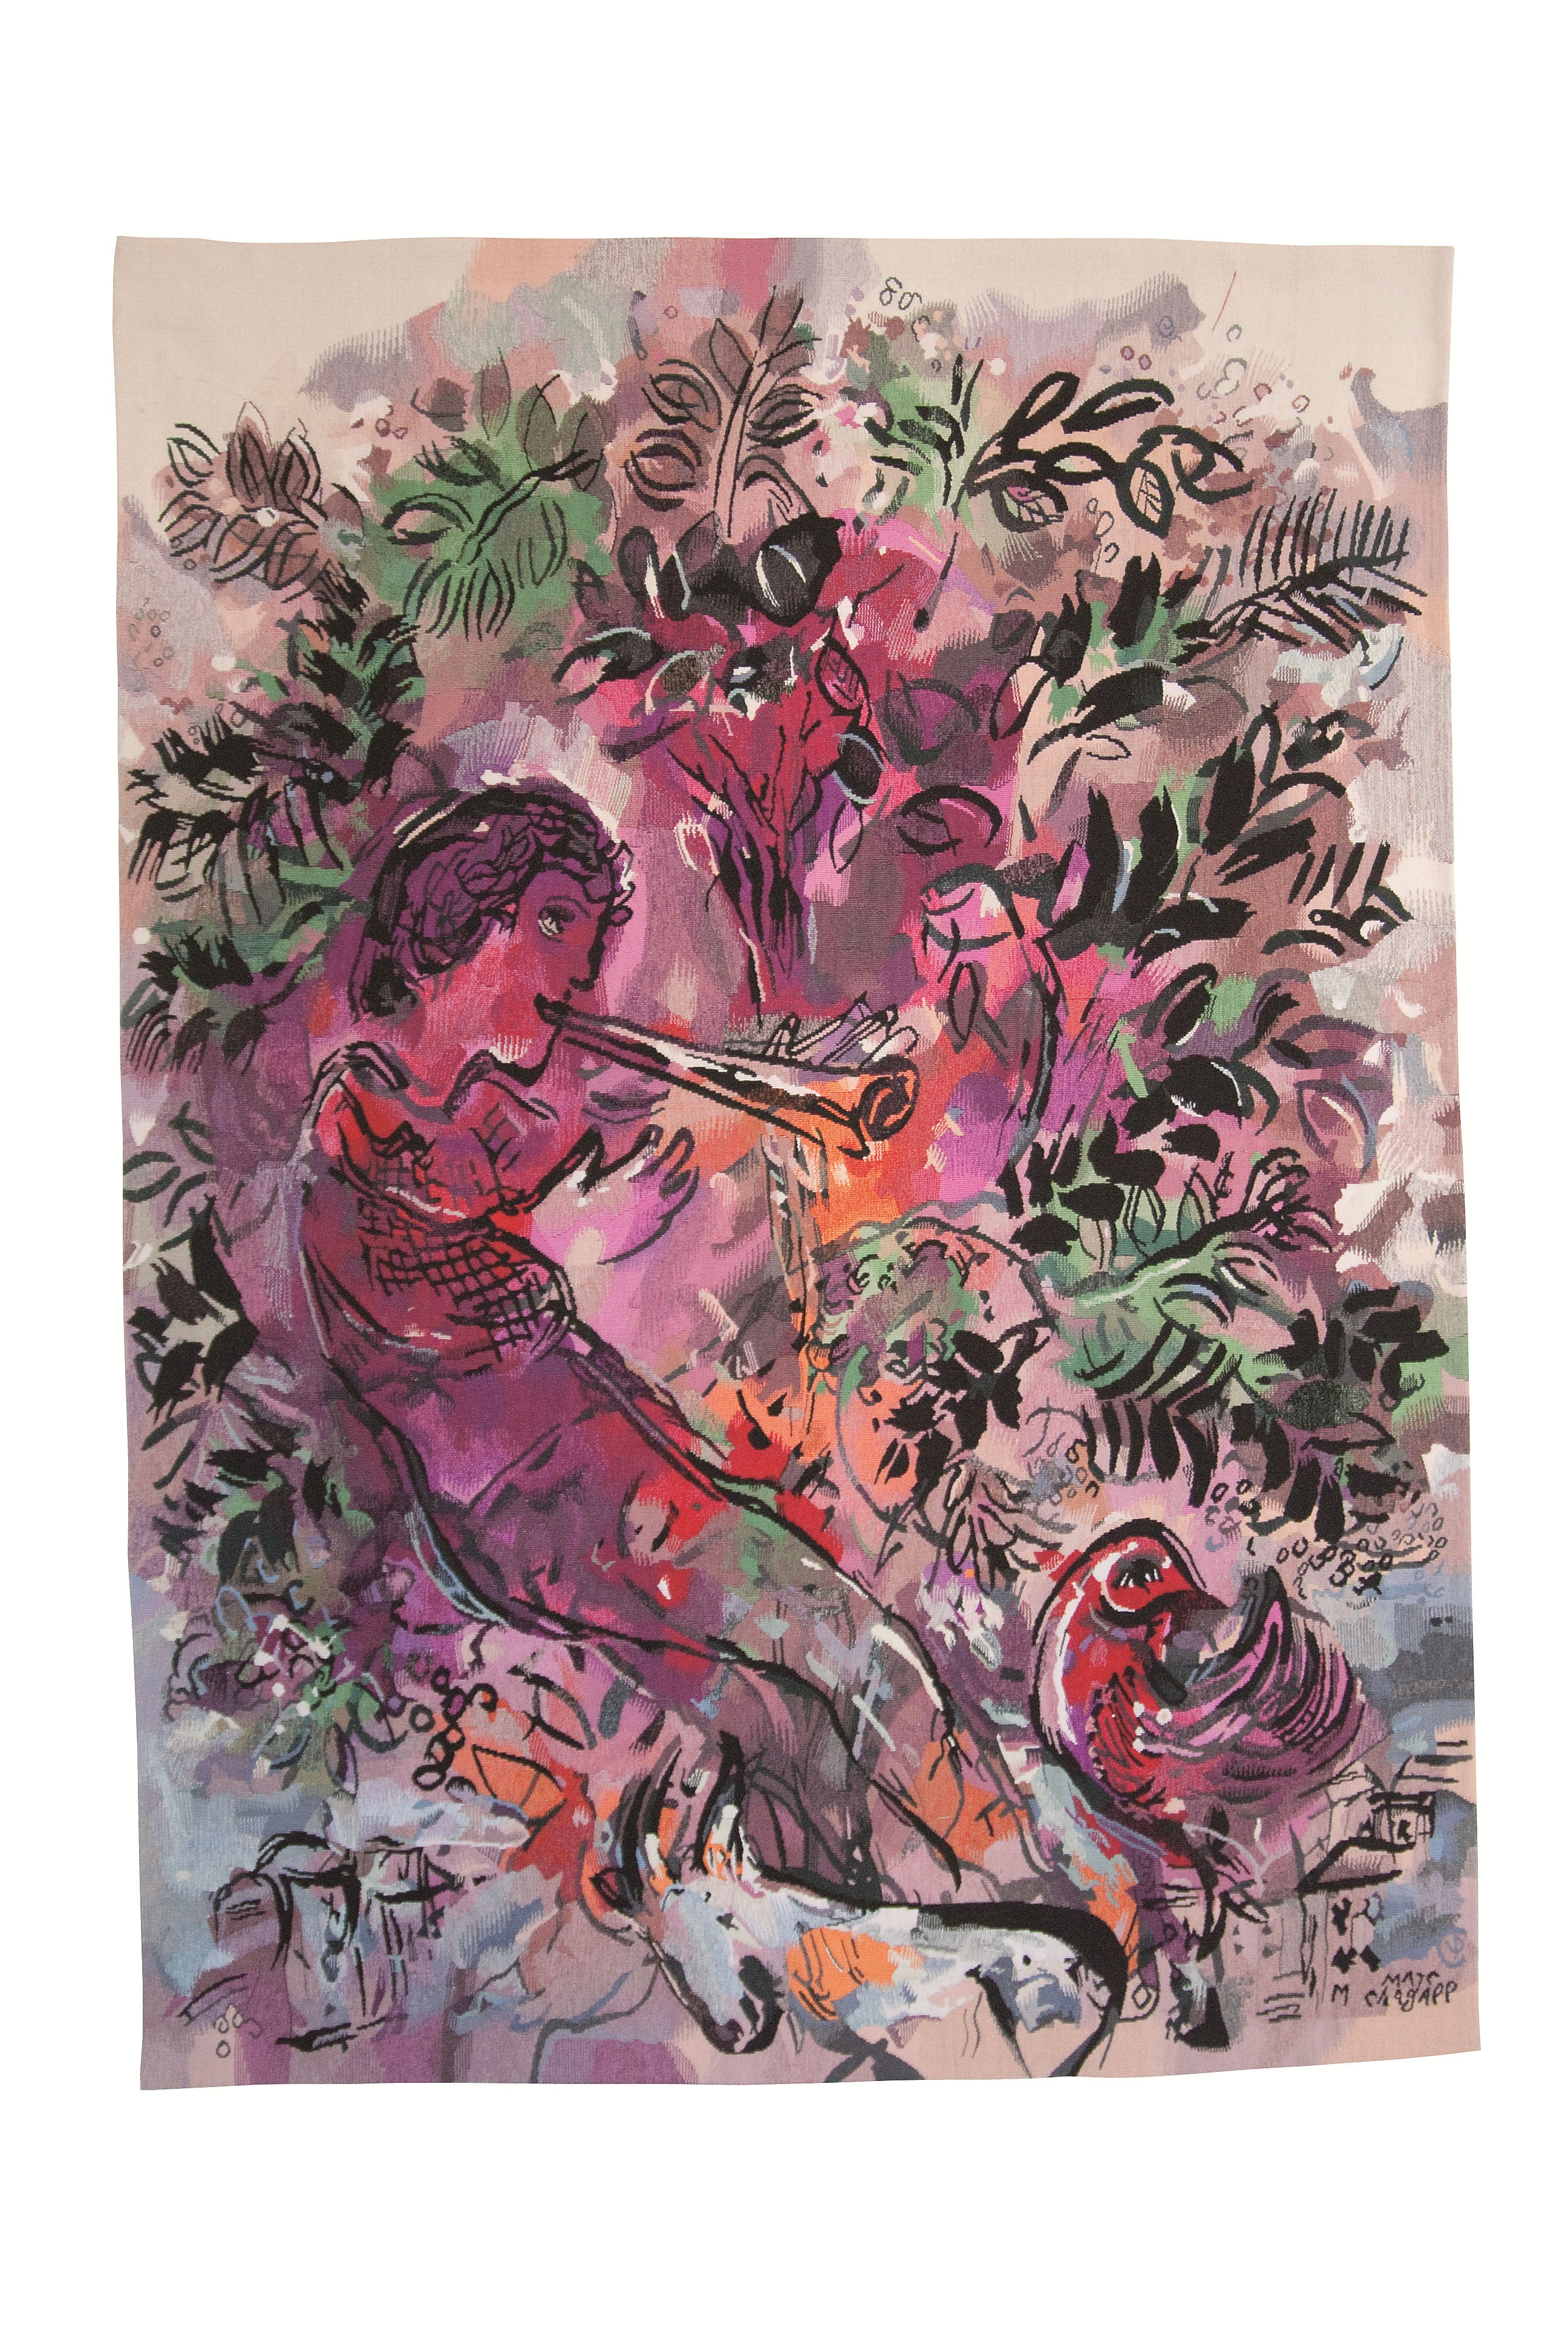 MUSEUM ART PRINT Le Garcon dans les Fleurs Marc Chagall 